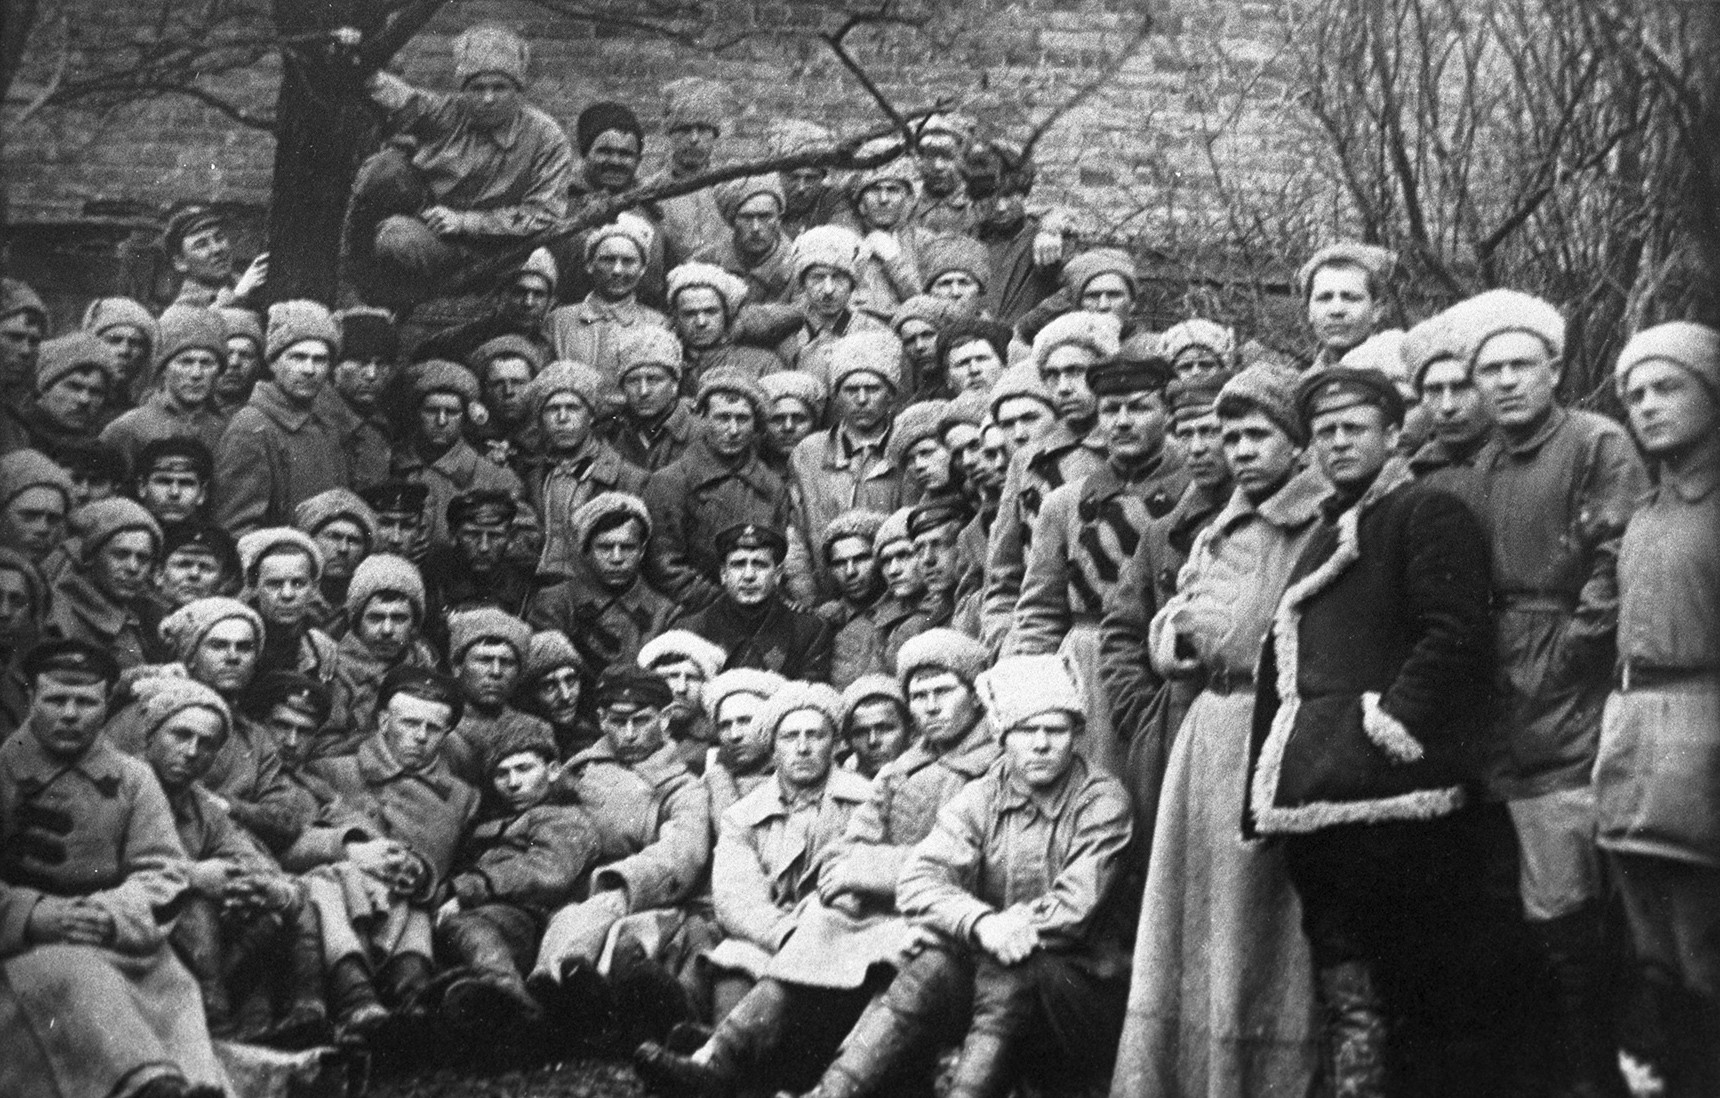 Црвени козаци пре напада на утврђење на Перекопу (Крим), последње упориште белогардејаца под командом генерала Петра Врангеља. Новембар 1920.